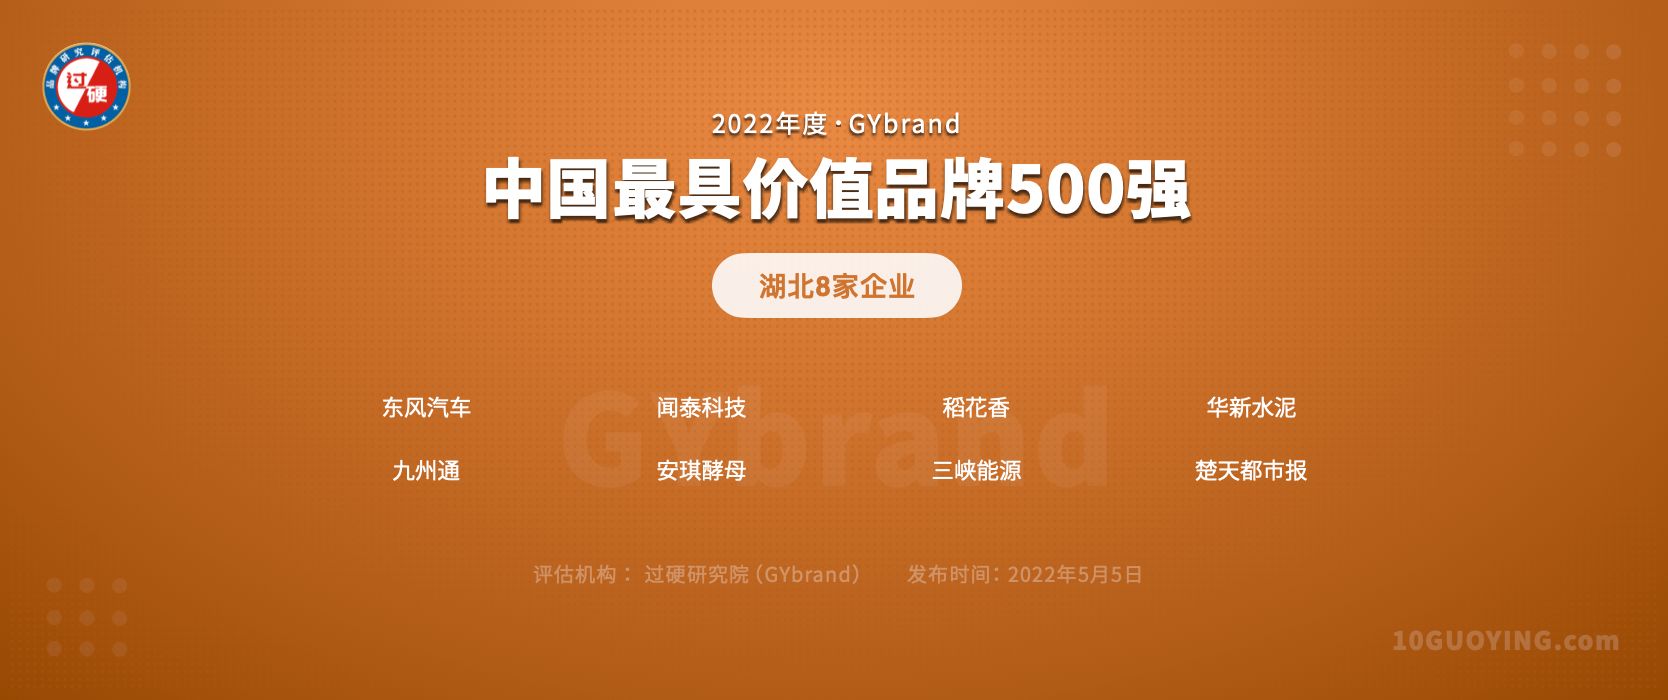 最新中国品牌500强湖北8家企业名单:武汉5家,宜昌2家,黄石1家